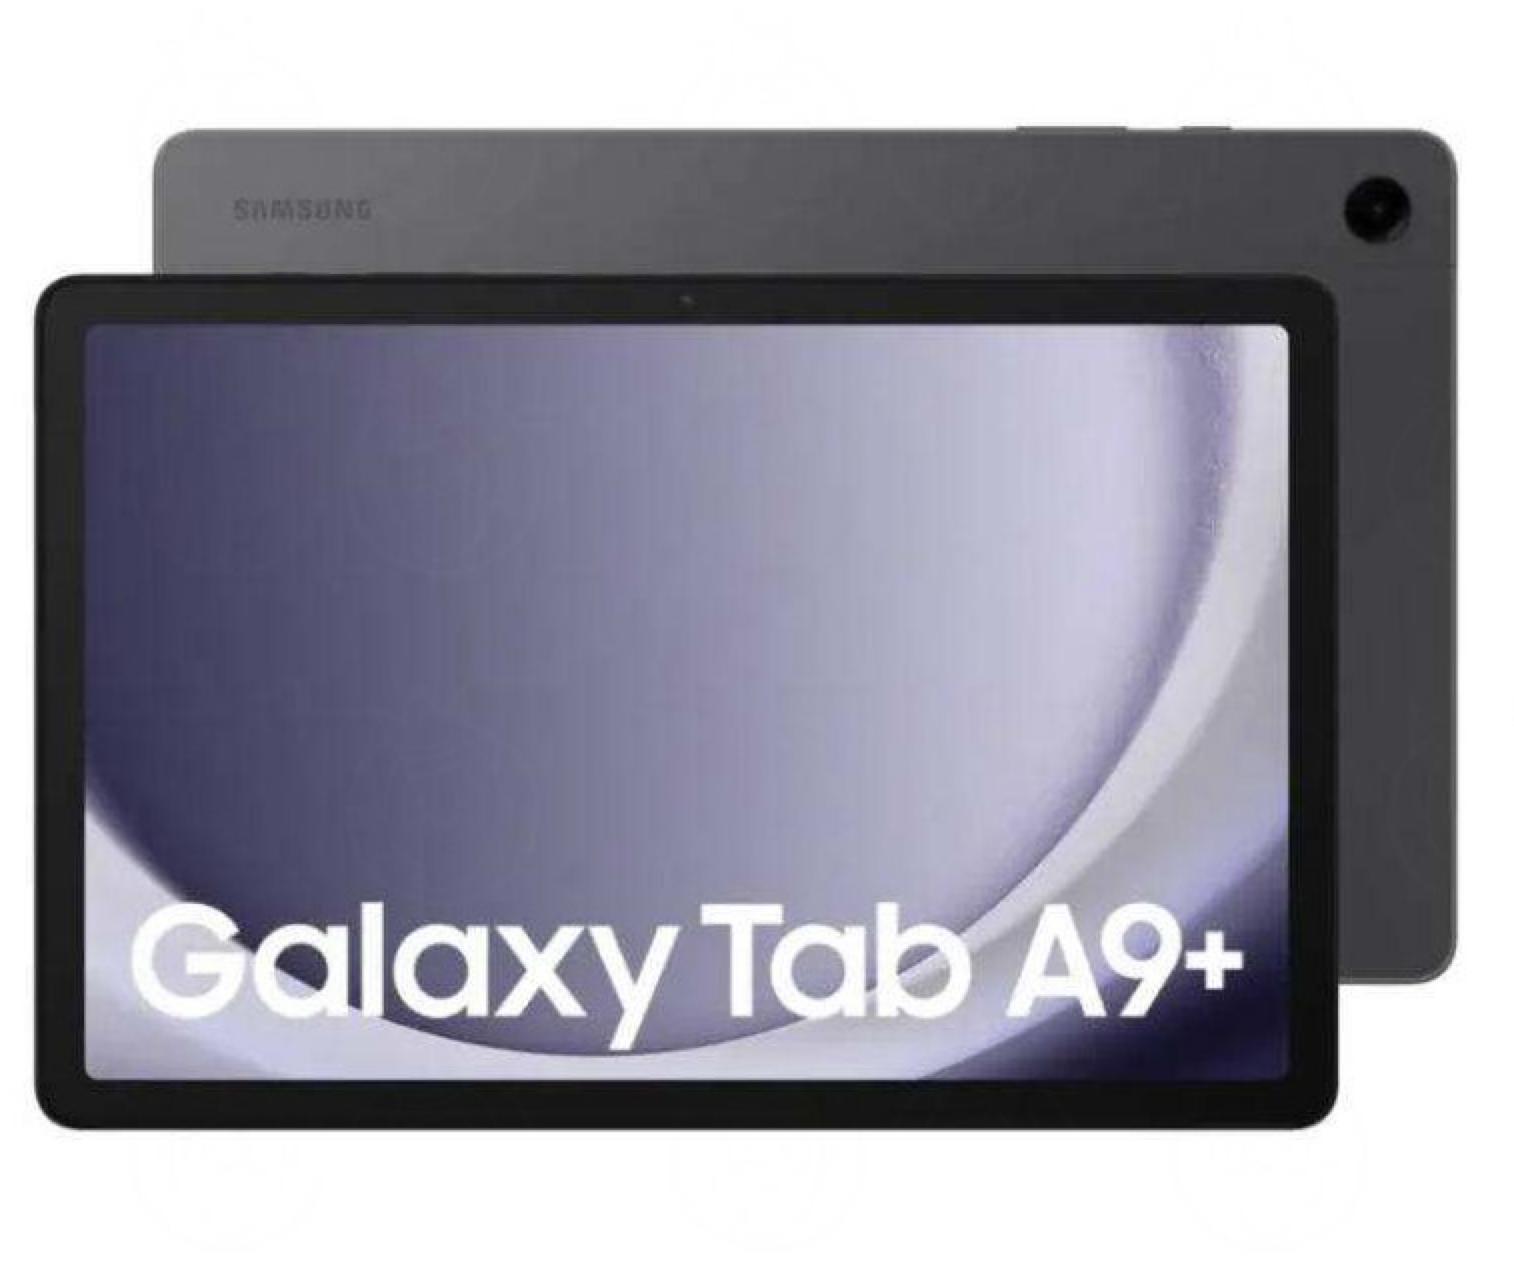 Samsung Galaxy TAb A9+